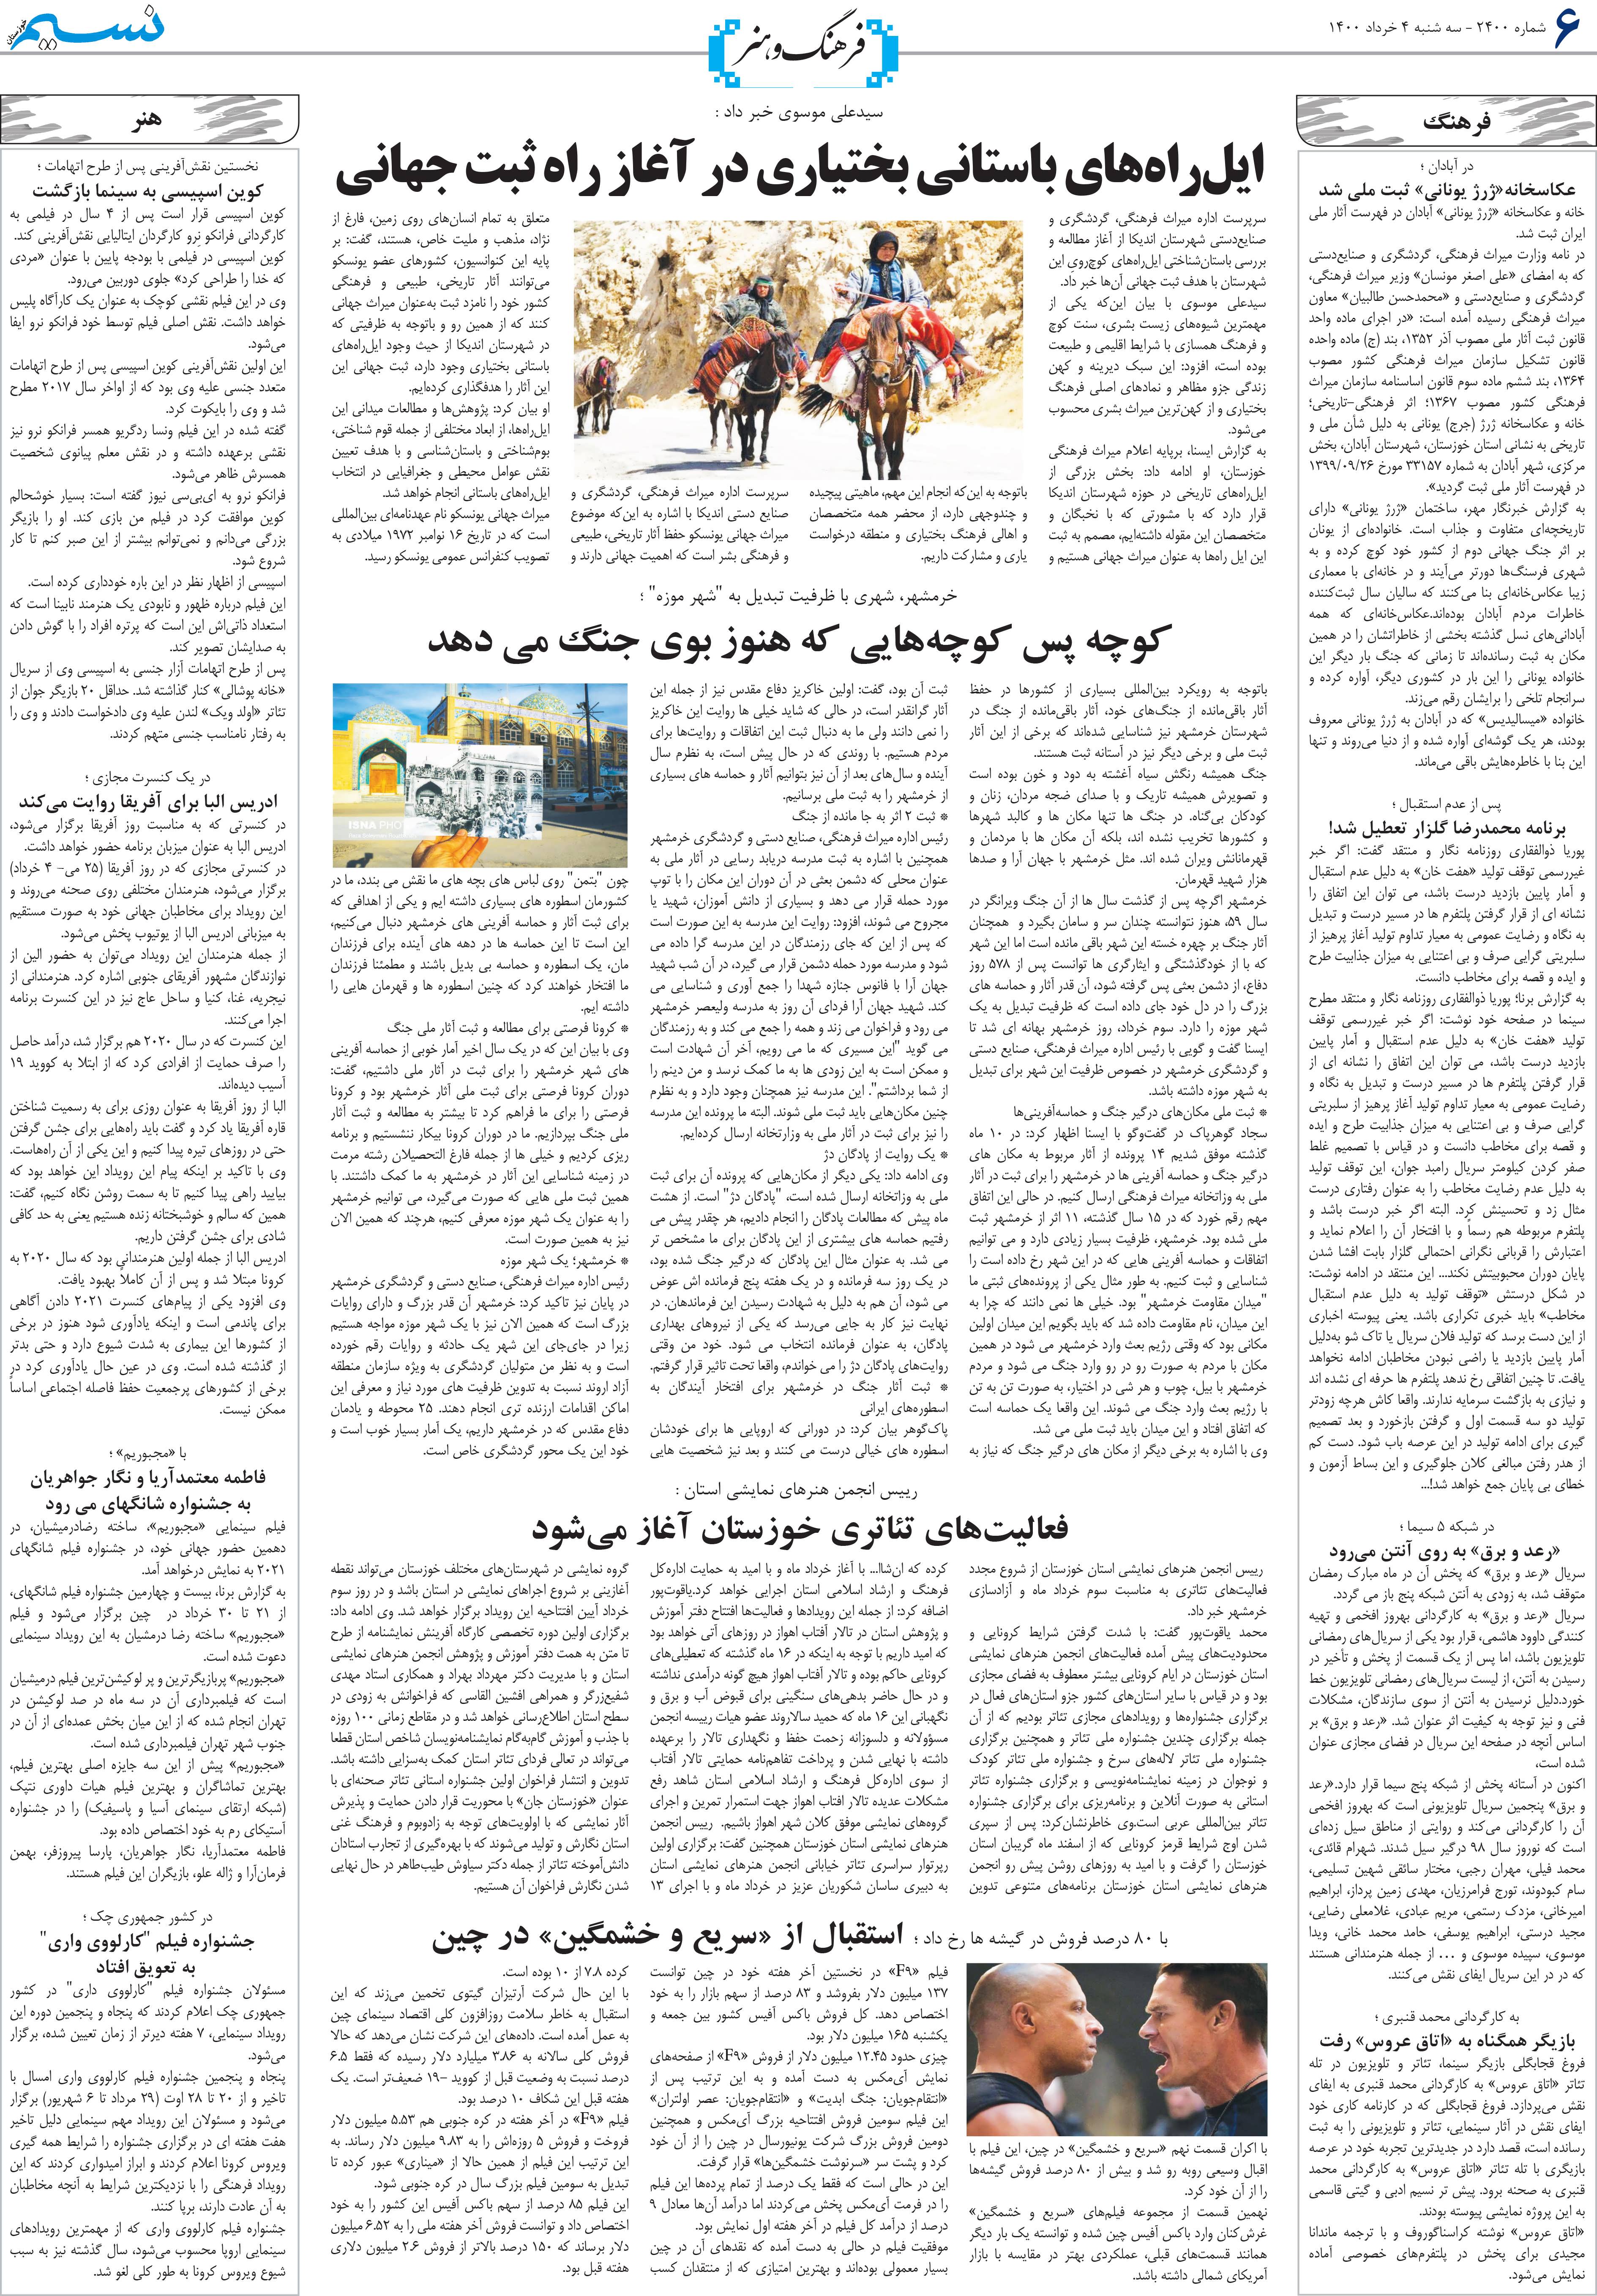 صفحه فرهنگ و هنر روزنامه نسیم شماره 2400